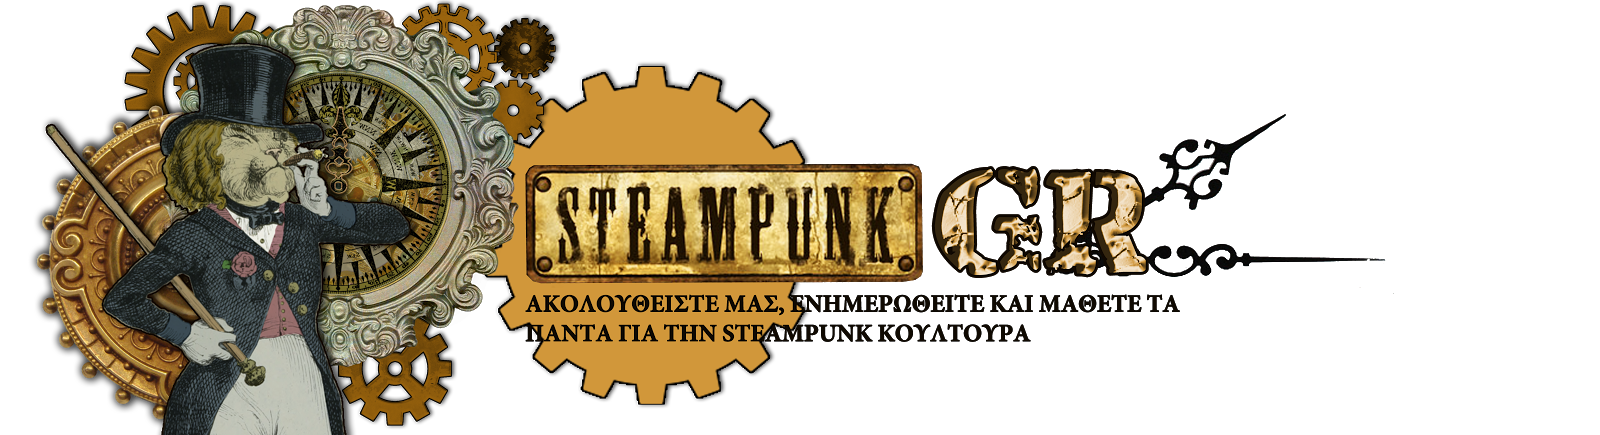 steampunkgr